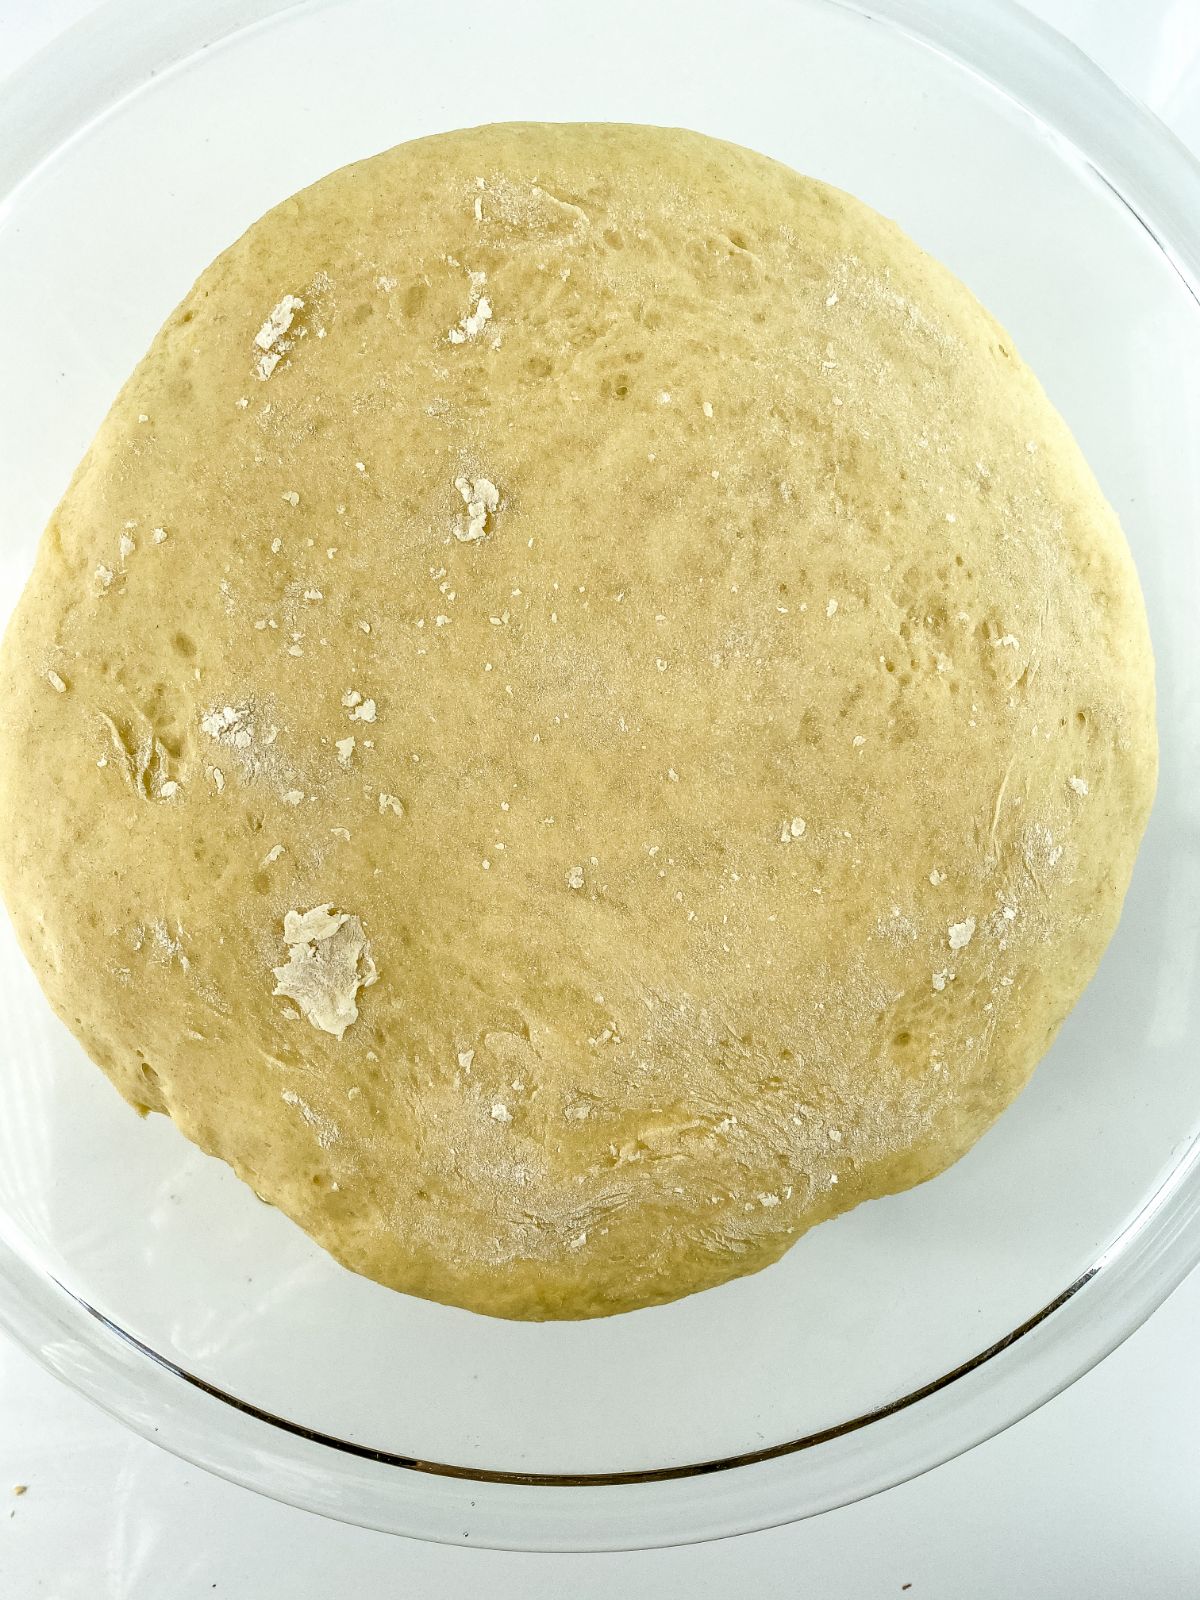 risen bowl of king cake dough